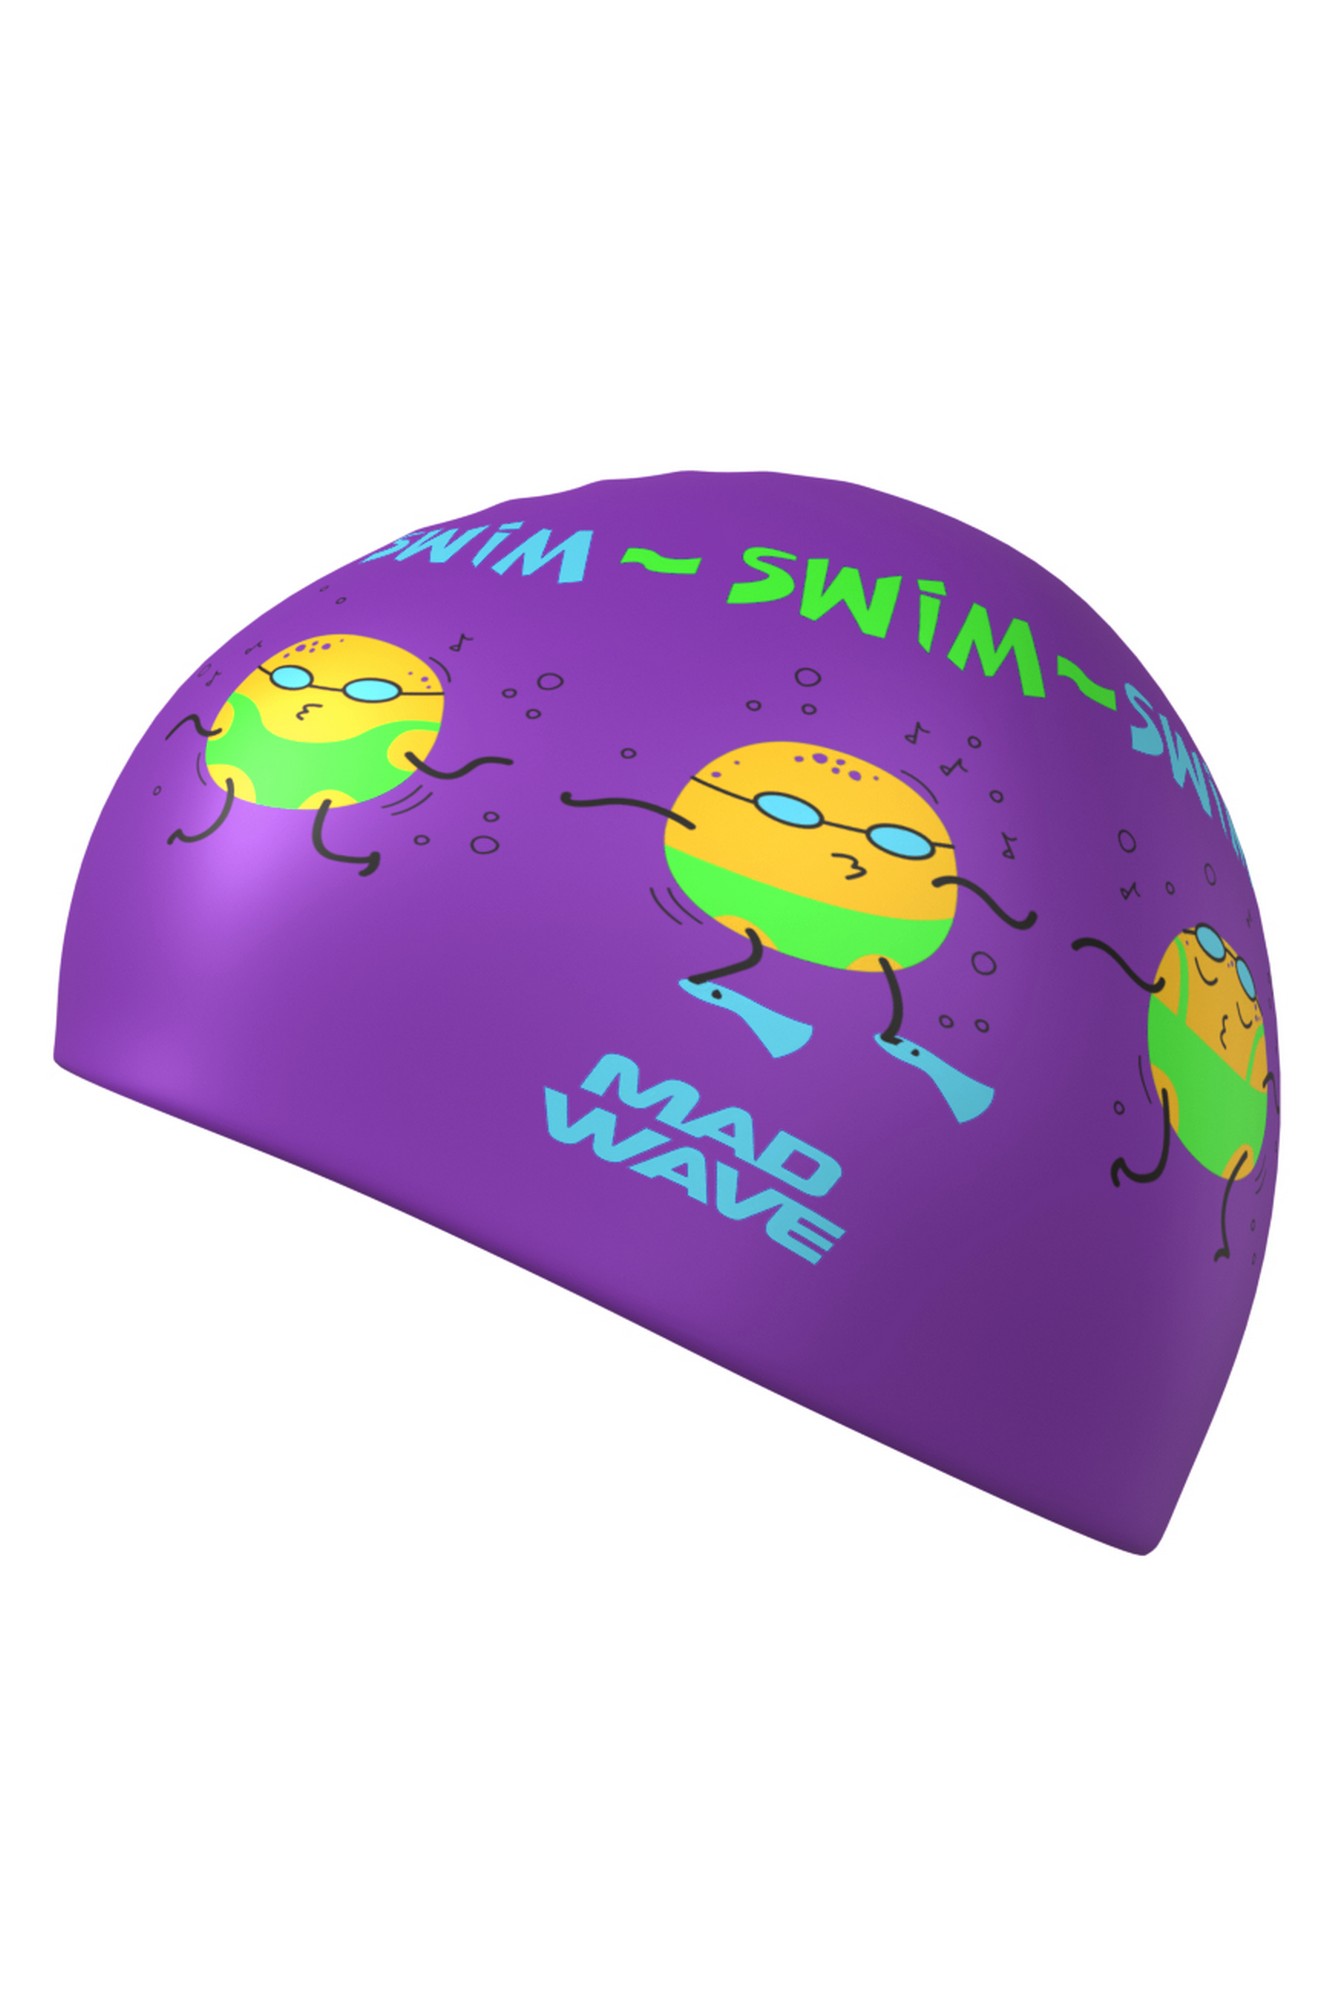 Силиконовая шапочка Mad Wave Potato M0553 26 0 09W фиолетовый 1333_2000